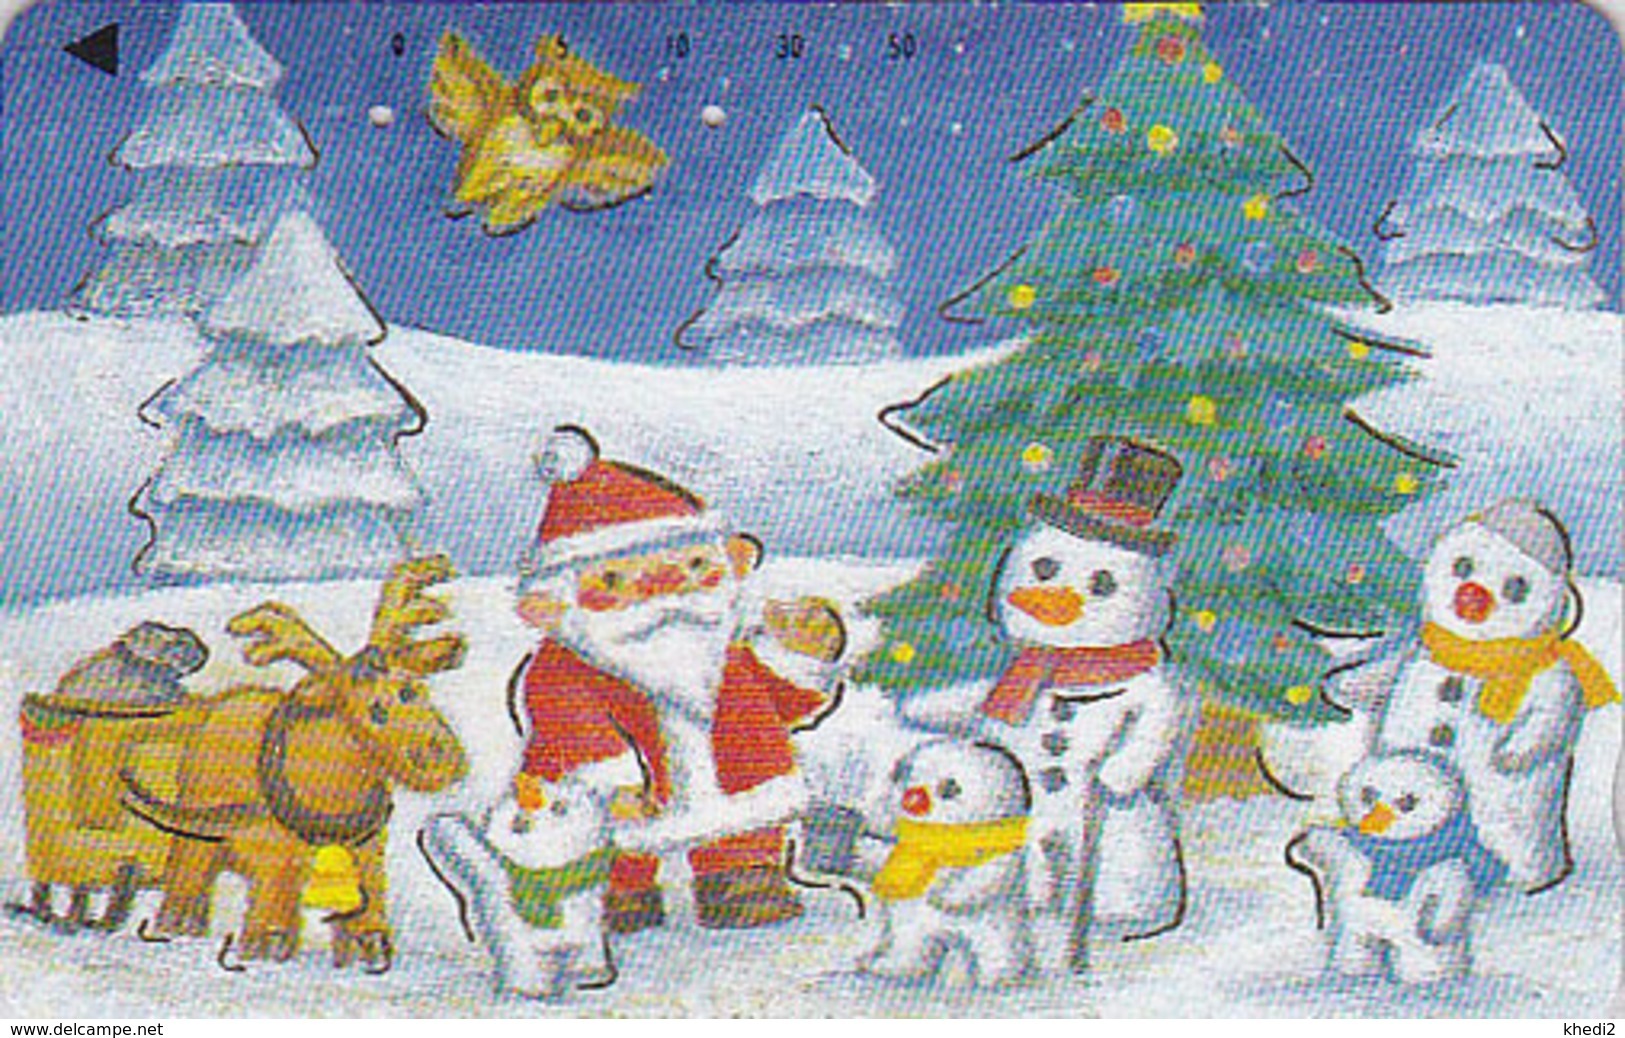 Télécarte Dorée Japon / 110-011  - HIBOU NOEL Bonhomme De Neige - OWL Bird CHRISTMAS Santa Japan Gold Phonecard - 2068 - Hiboux & Chouettes